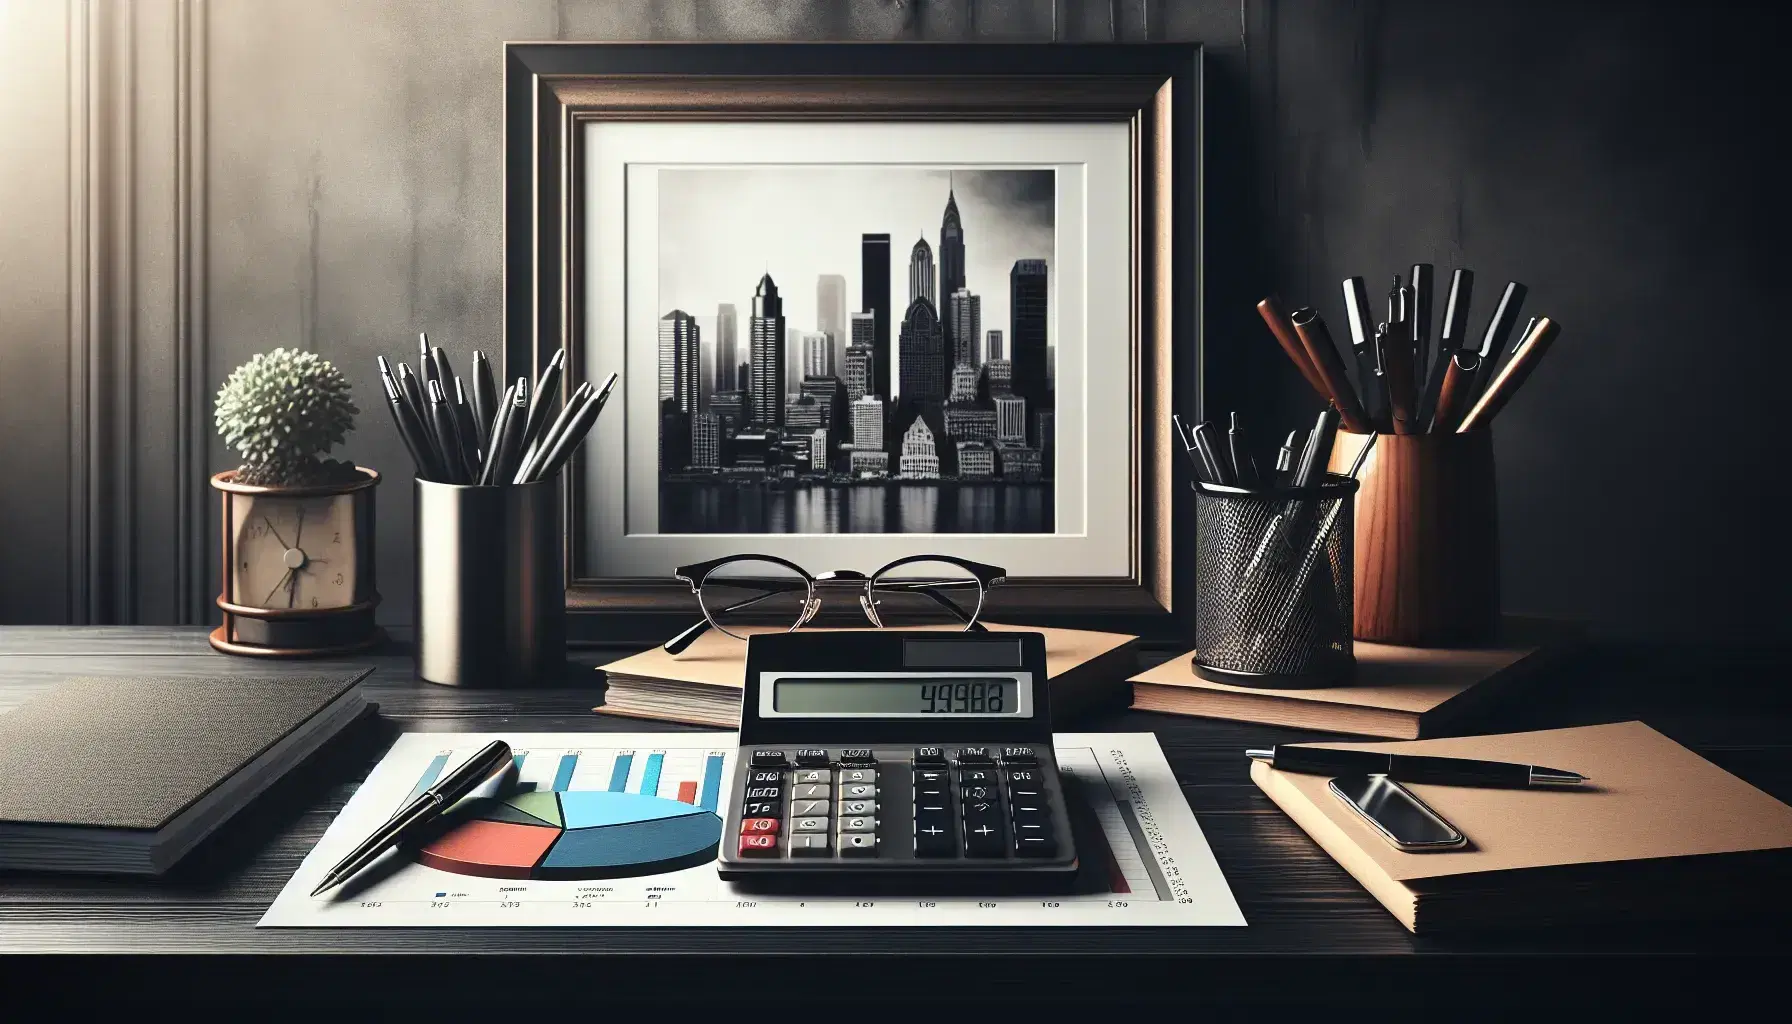 Escritorio de madera oscura con calculadora, gráfico de sectores, bolígrafos y papeles, gafas y marco de foto con paisaje urbano, planta de interior al fondo.